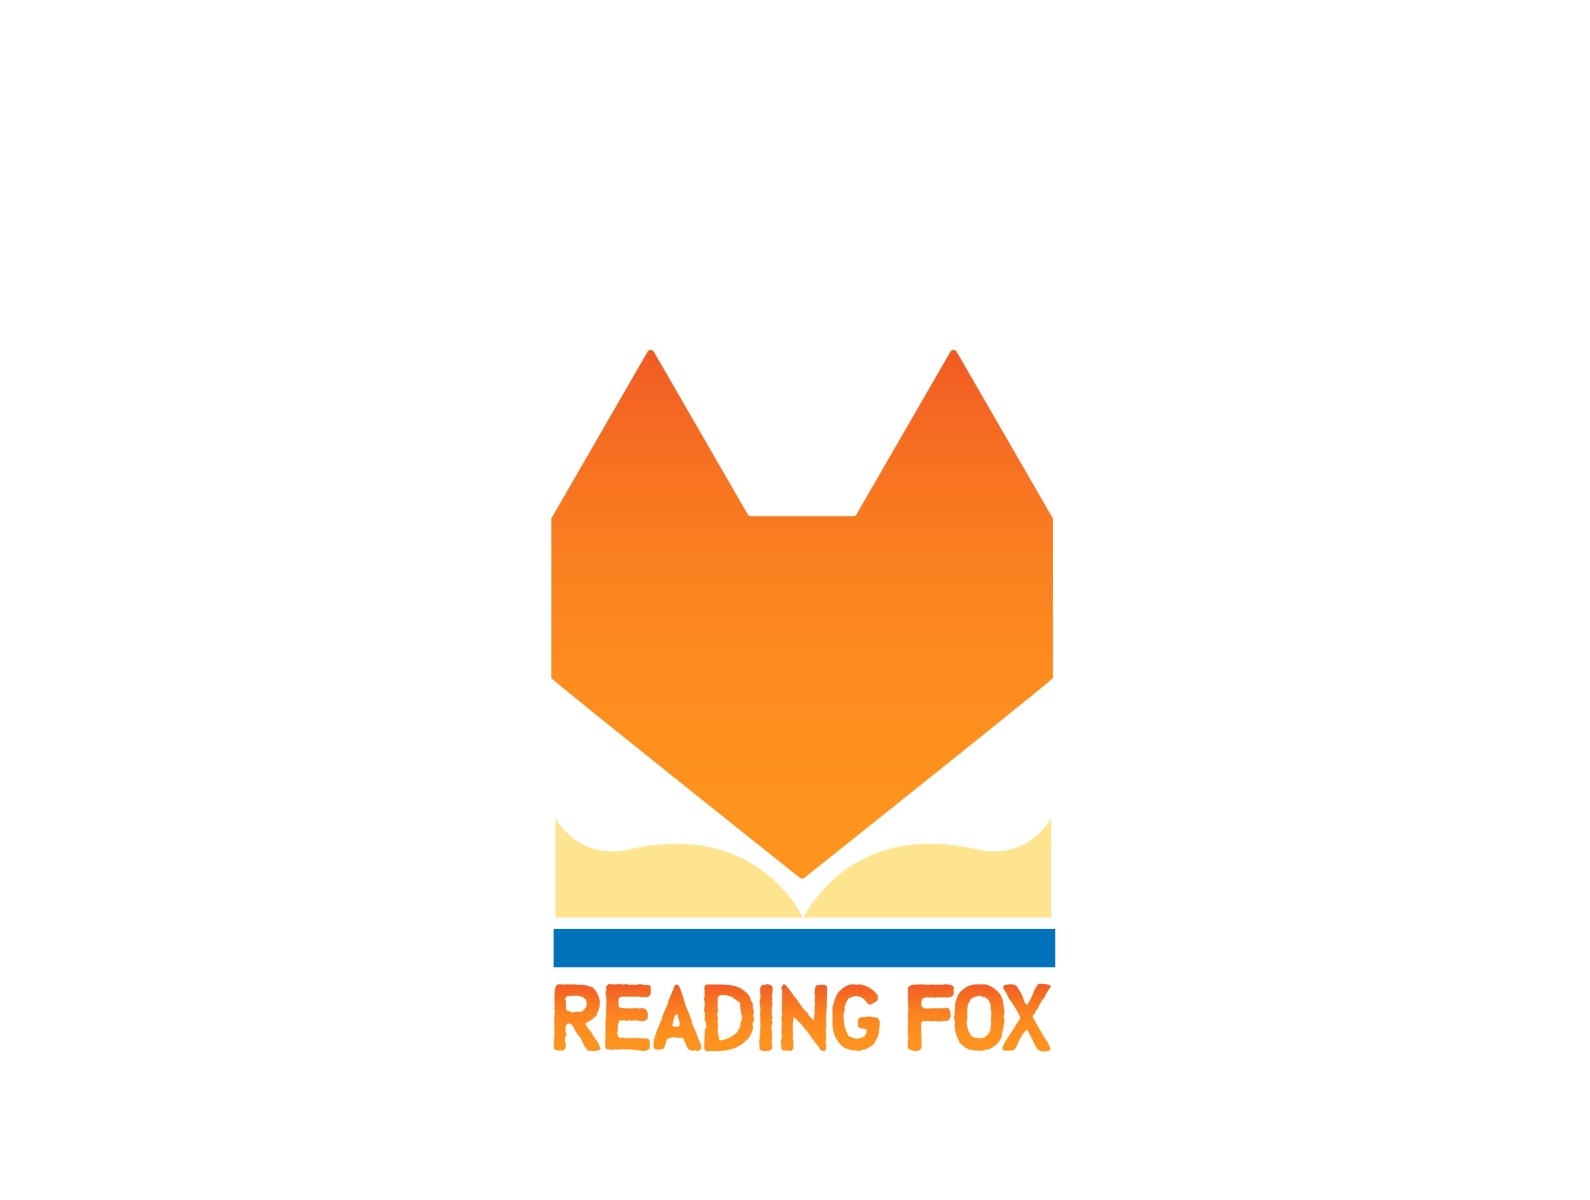 Read foxes. Логотип лисы. Логотип лиса книга. Логотип лиса с книжкой. Венчур Фокс логотип.